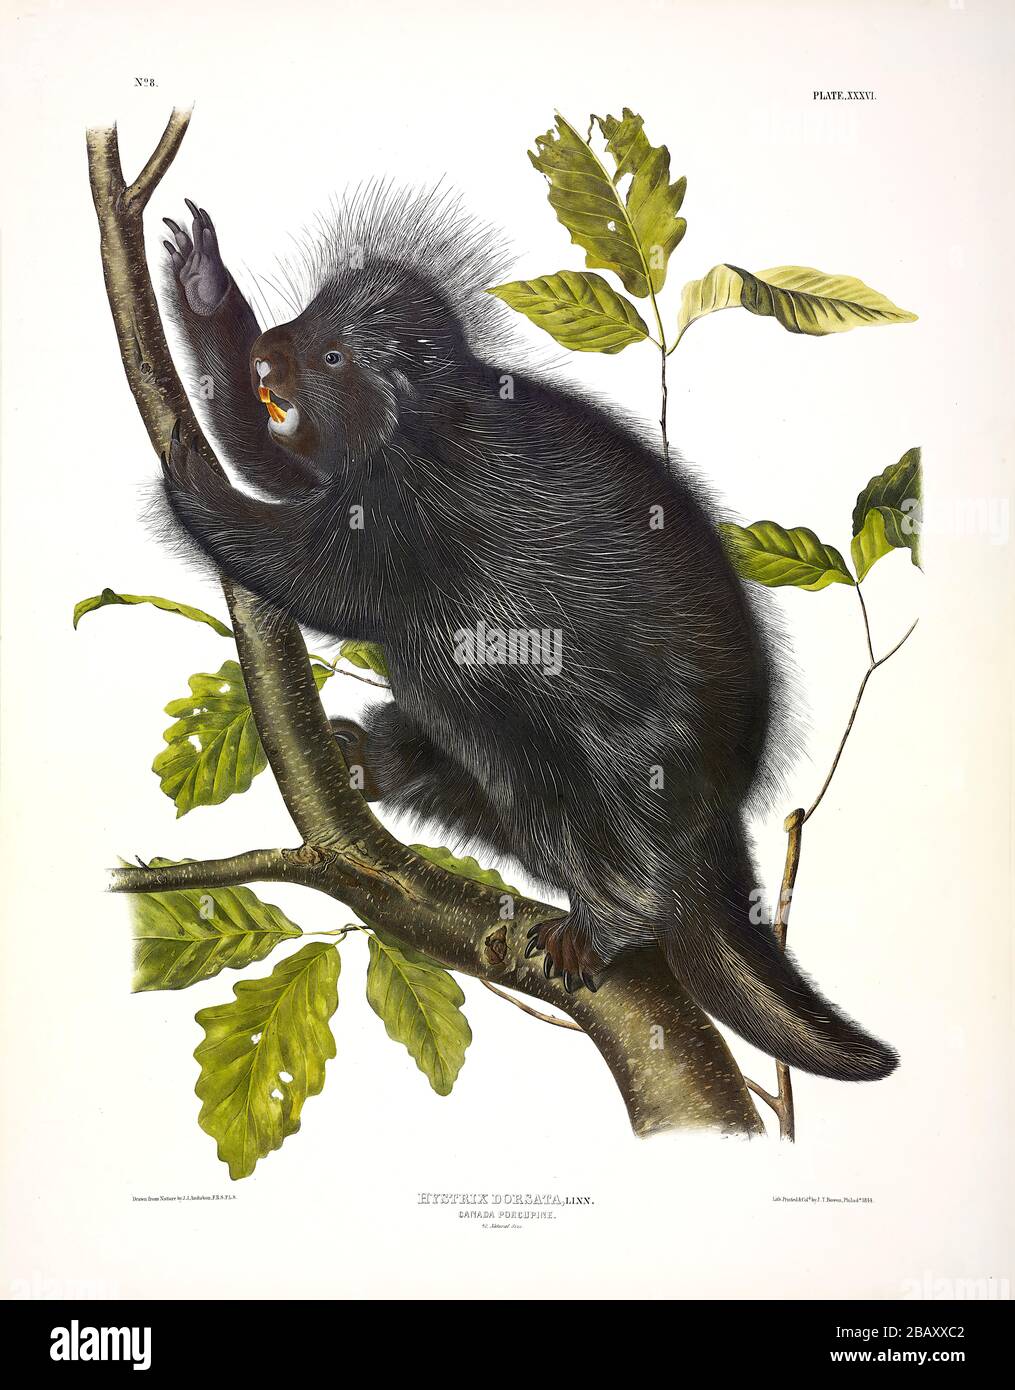 Assiette 36 Porcupine du Canada (hystrix dorsata) du viviviparous QUADRUPEDS d'Amérique du Nord, John James Audubon, très haute résolution et édition de qualité Banque D'Images